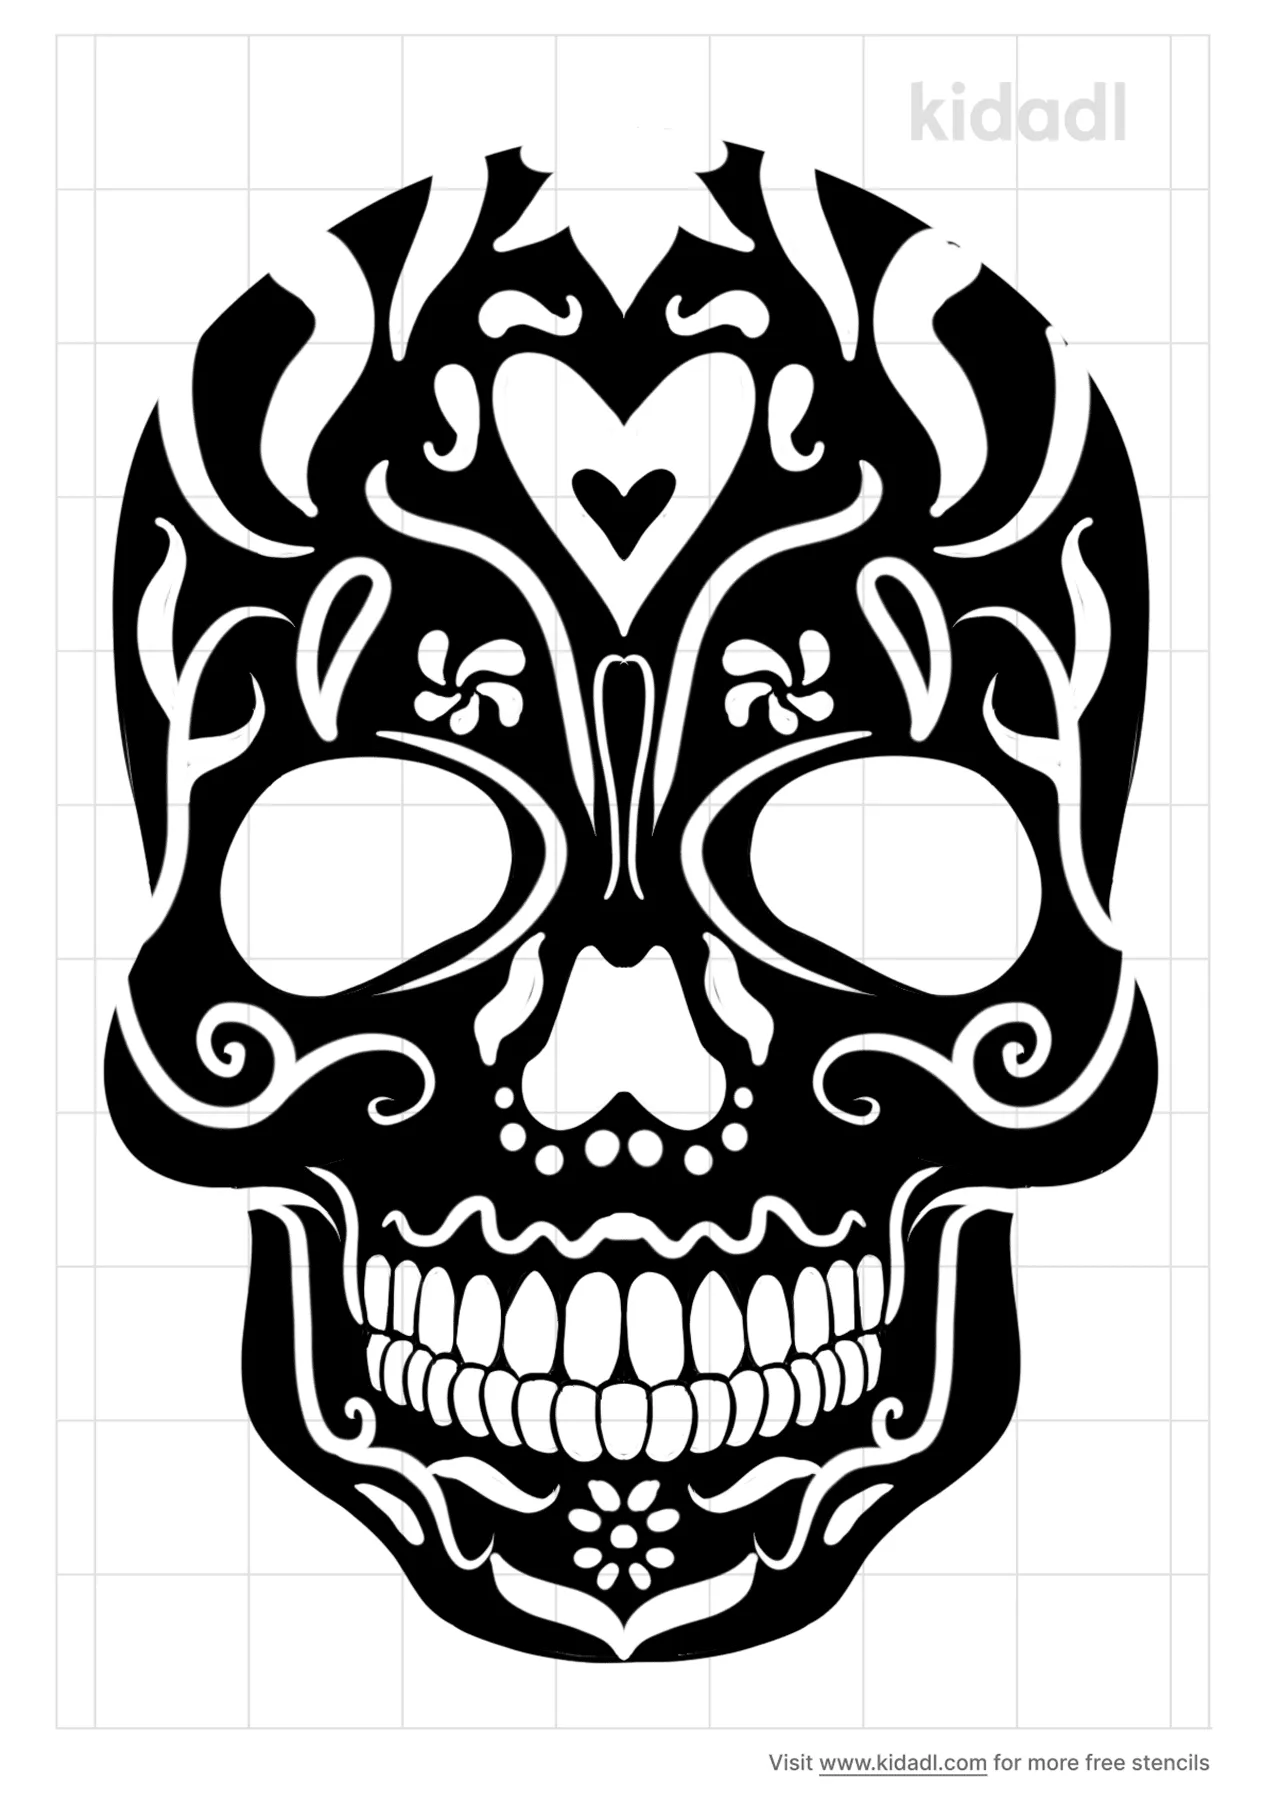 vampire skull stencils free printable halloween stencils kidadl and halloween stencils free printable stencils kidadl